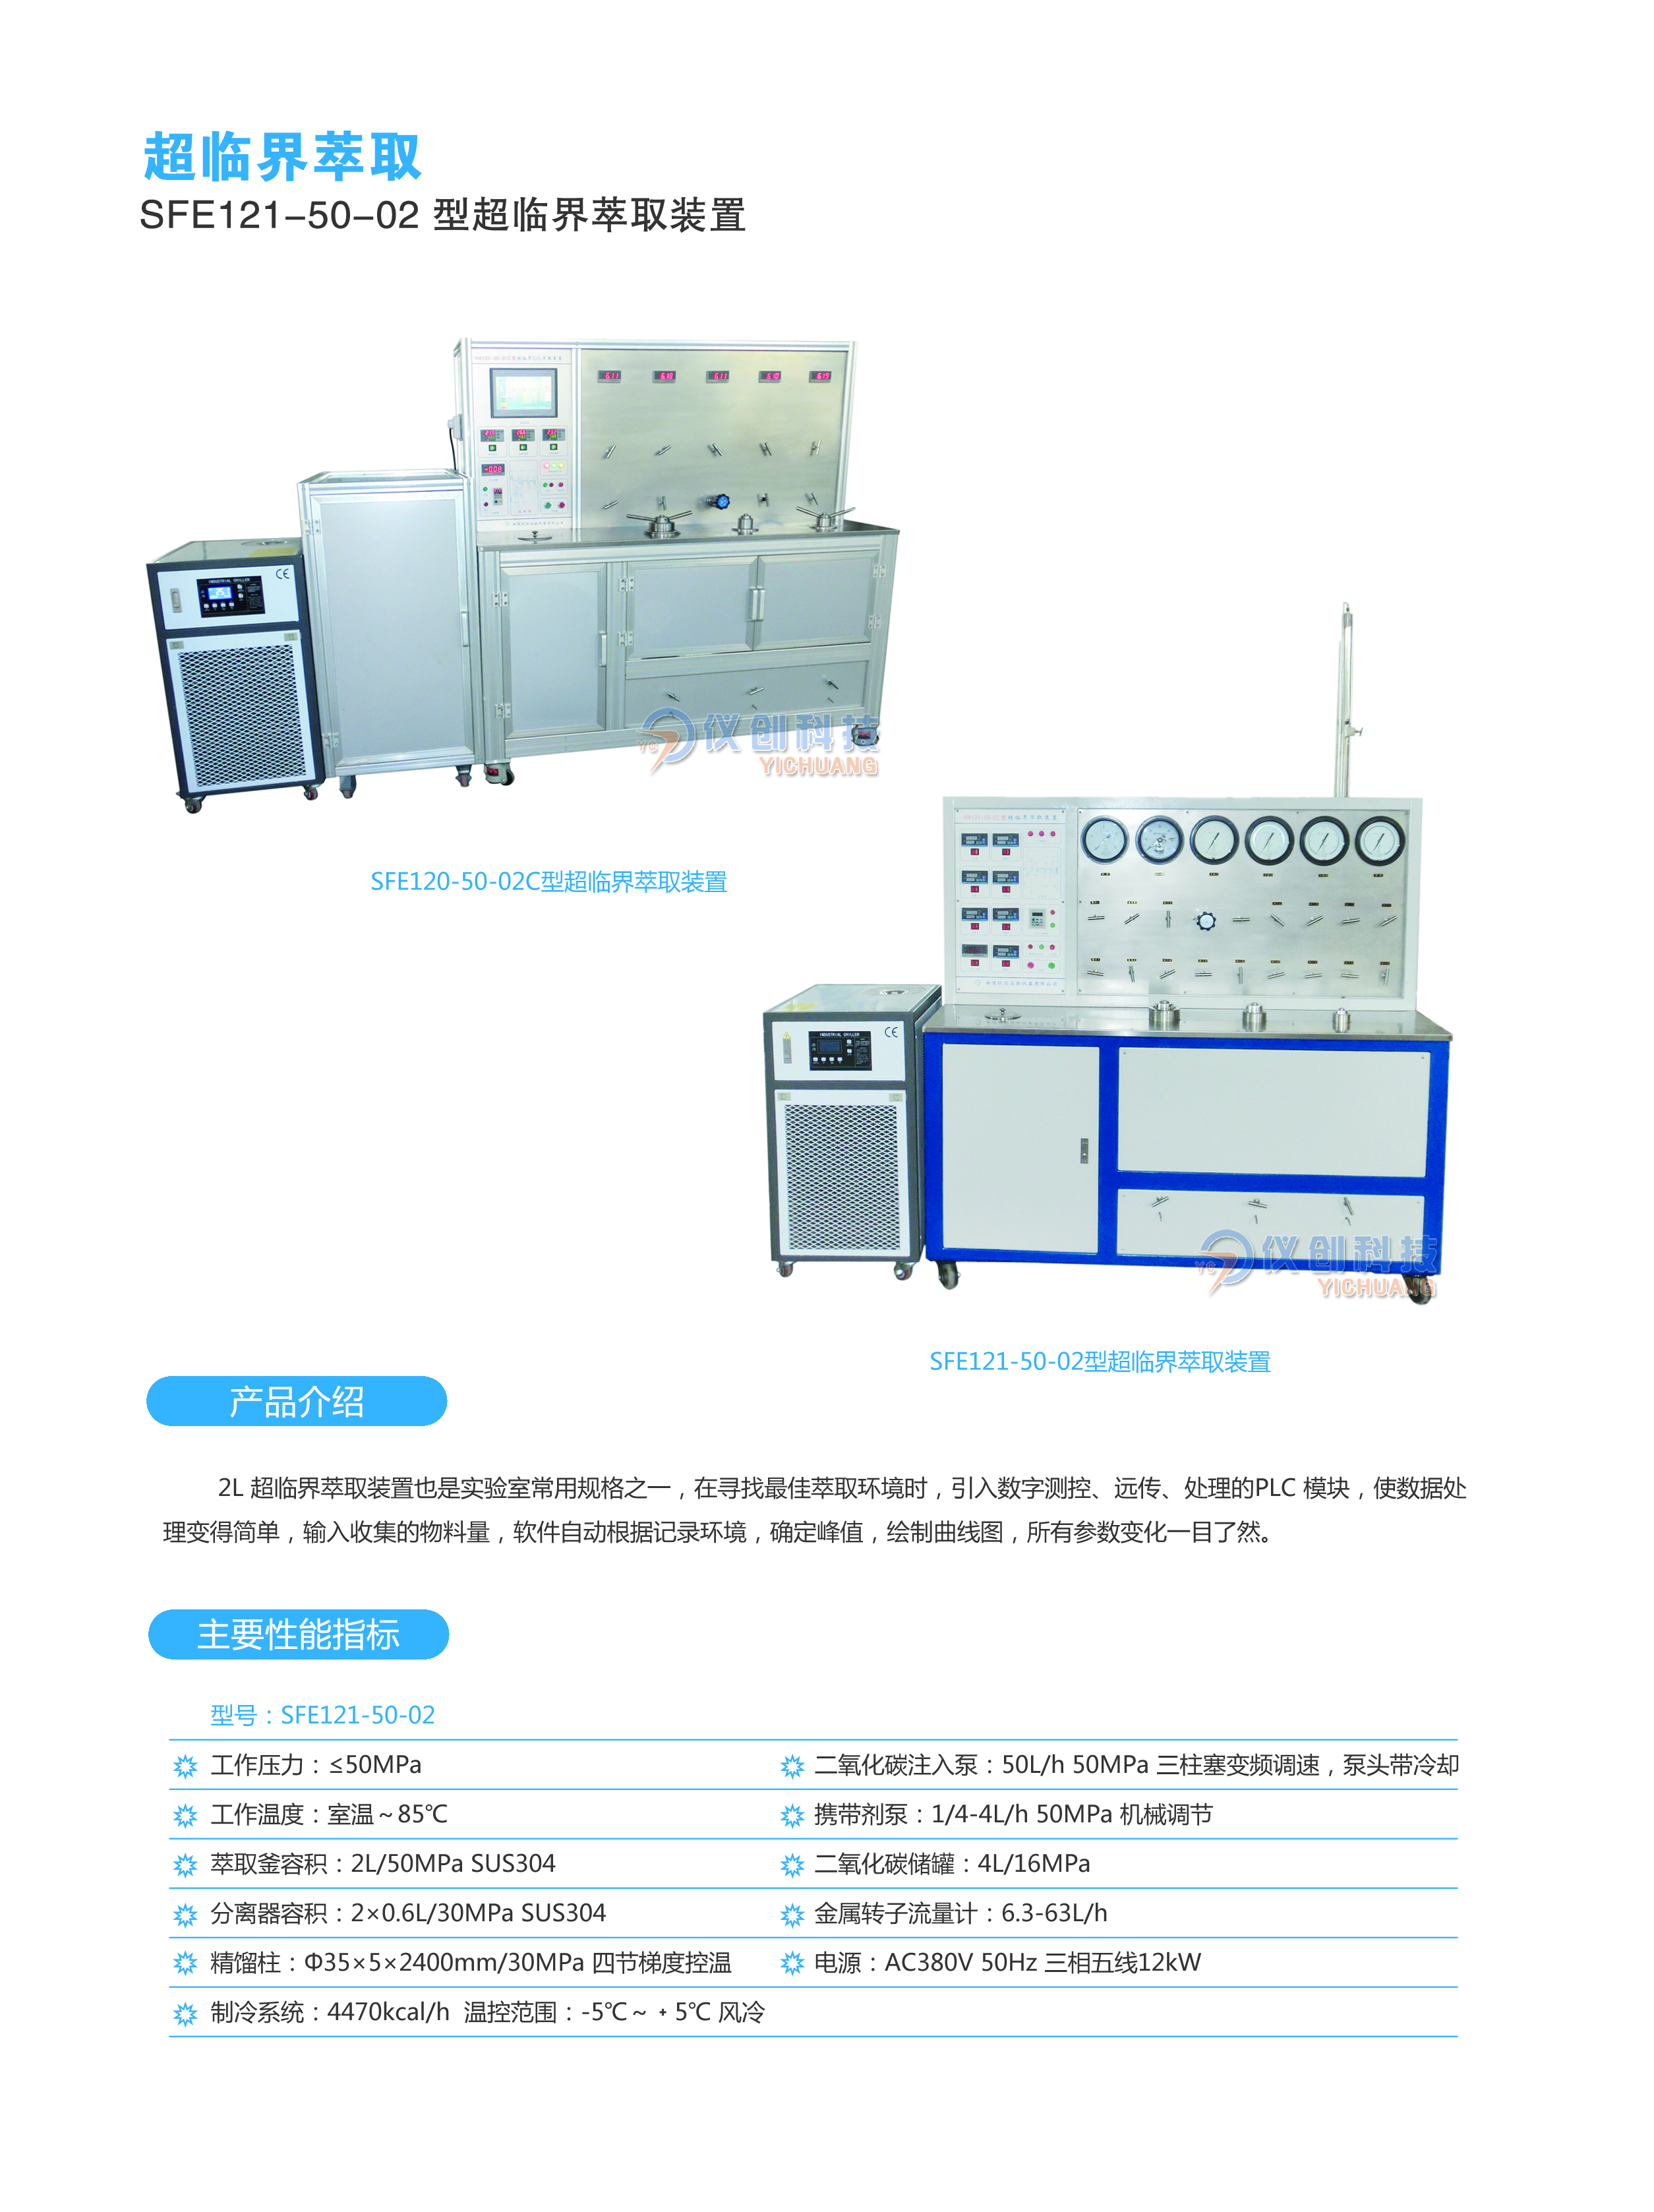 SFE121-50-02型超临界萃取装置